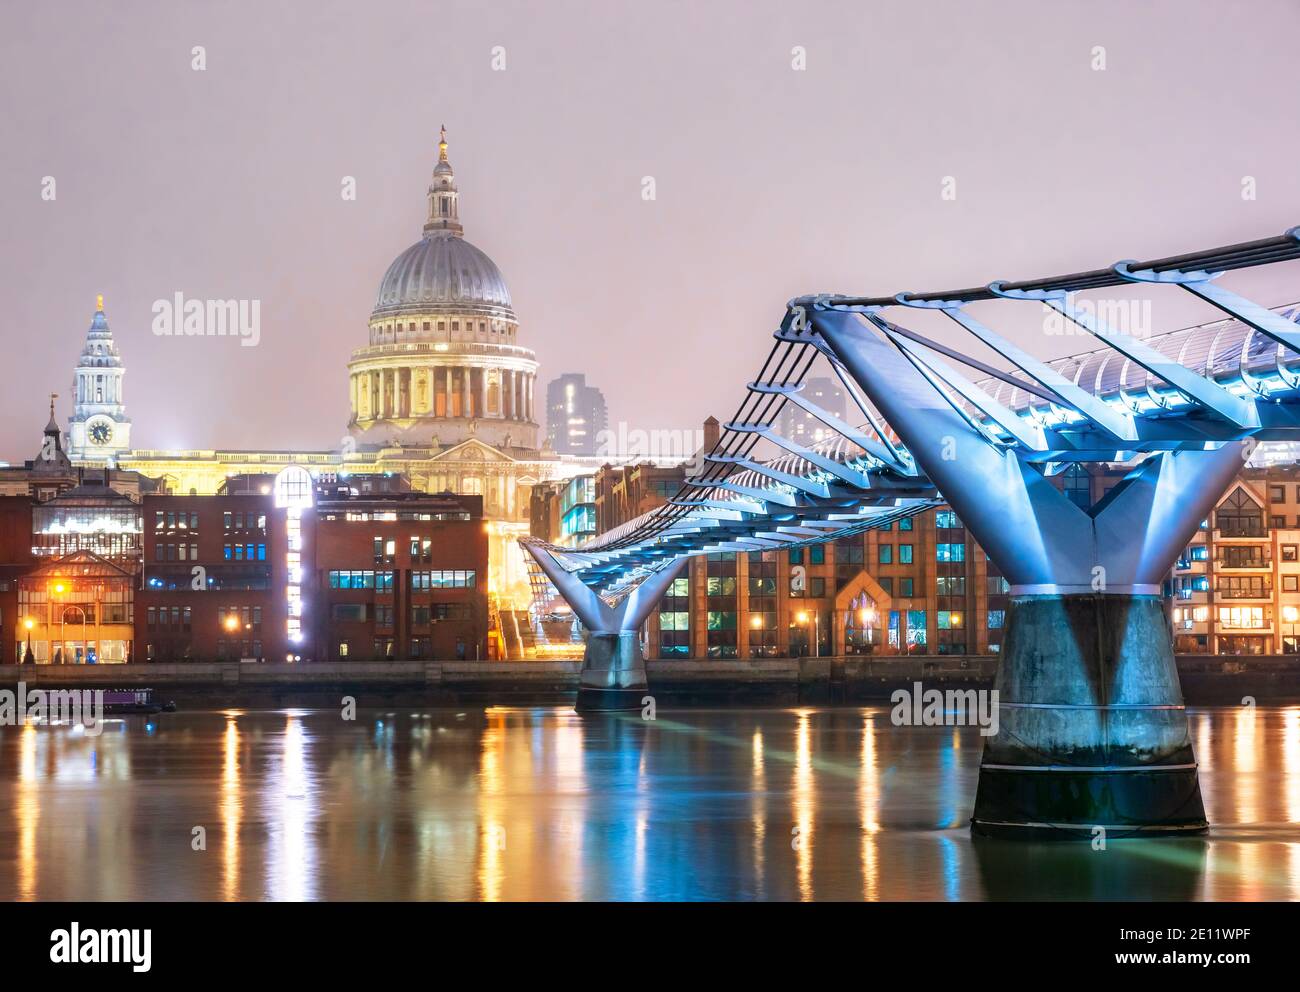 Puente del Milenio y la famosa Catedral de San Pablo en el ciudad de Londres iluminada en luces de noche Foto de stock